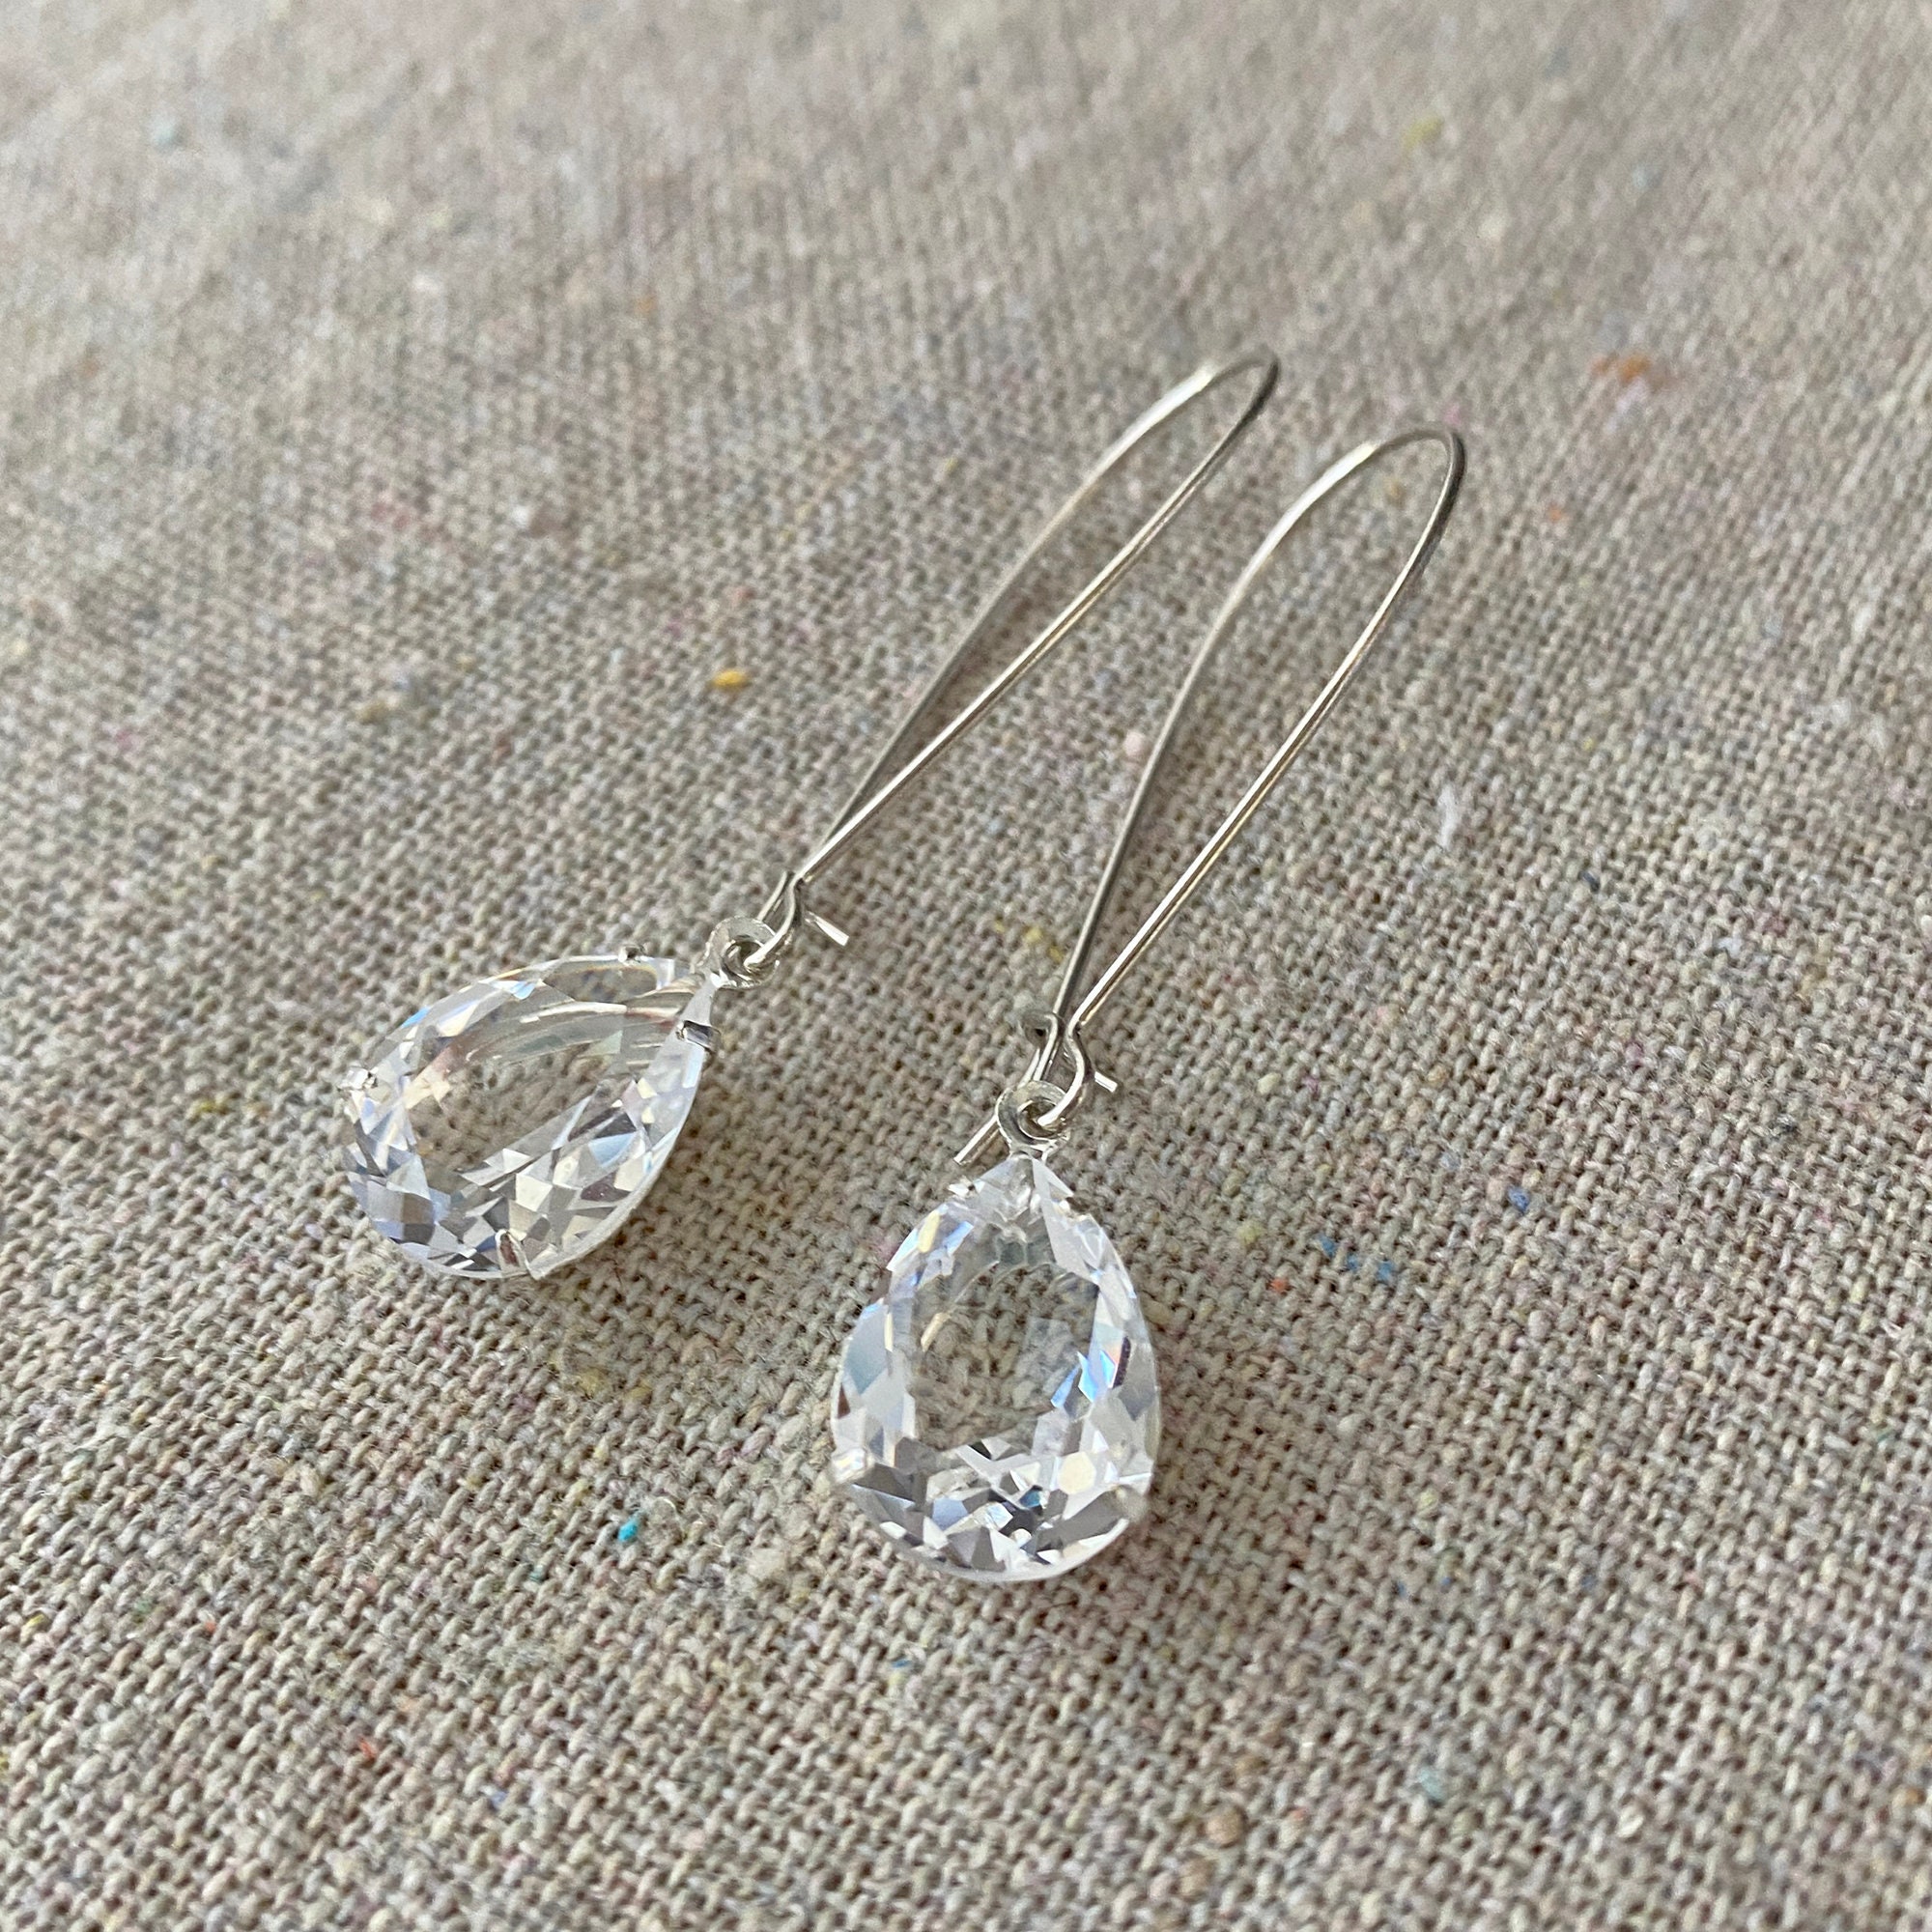 Clear Crystal Cluster Earrings with Teardrop – Dames a la Mode